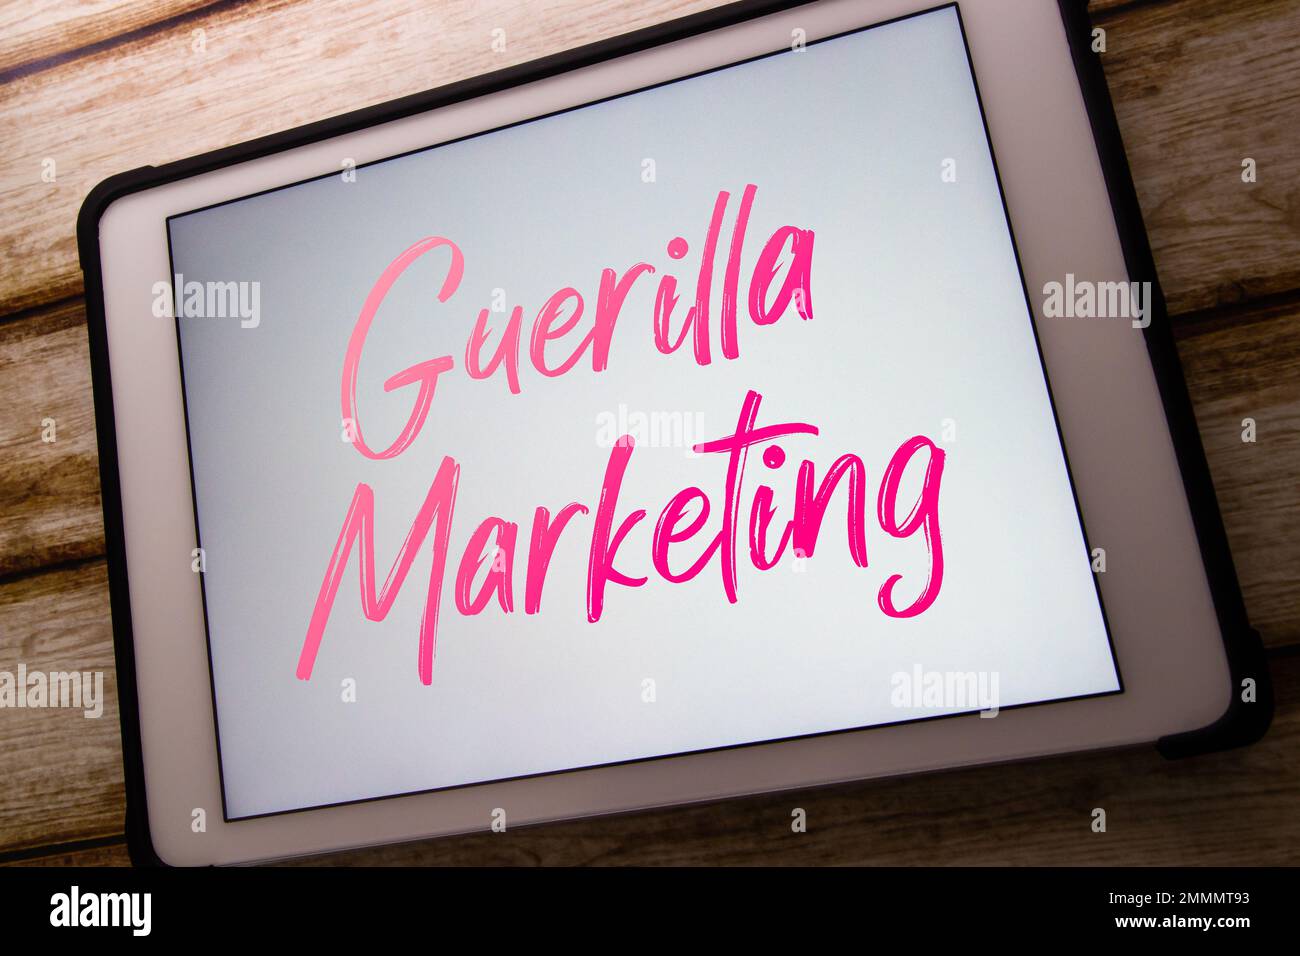 Le mot-clé « Guerrilla Marketing » s'affiche sur la tablette. Stratégie de publicité par des interactions surprises ou non conventionnelles pour promouvoir le concept de produit ou de service Banque D'Images